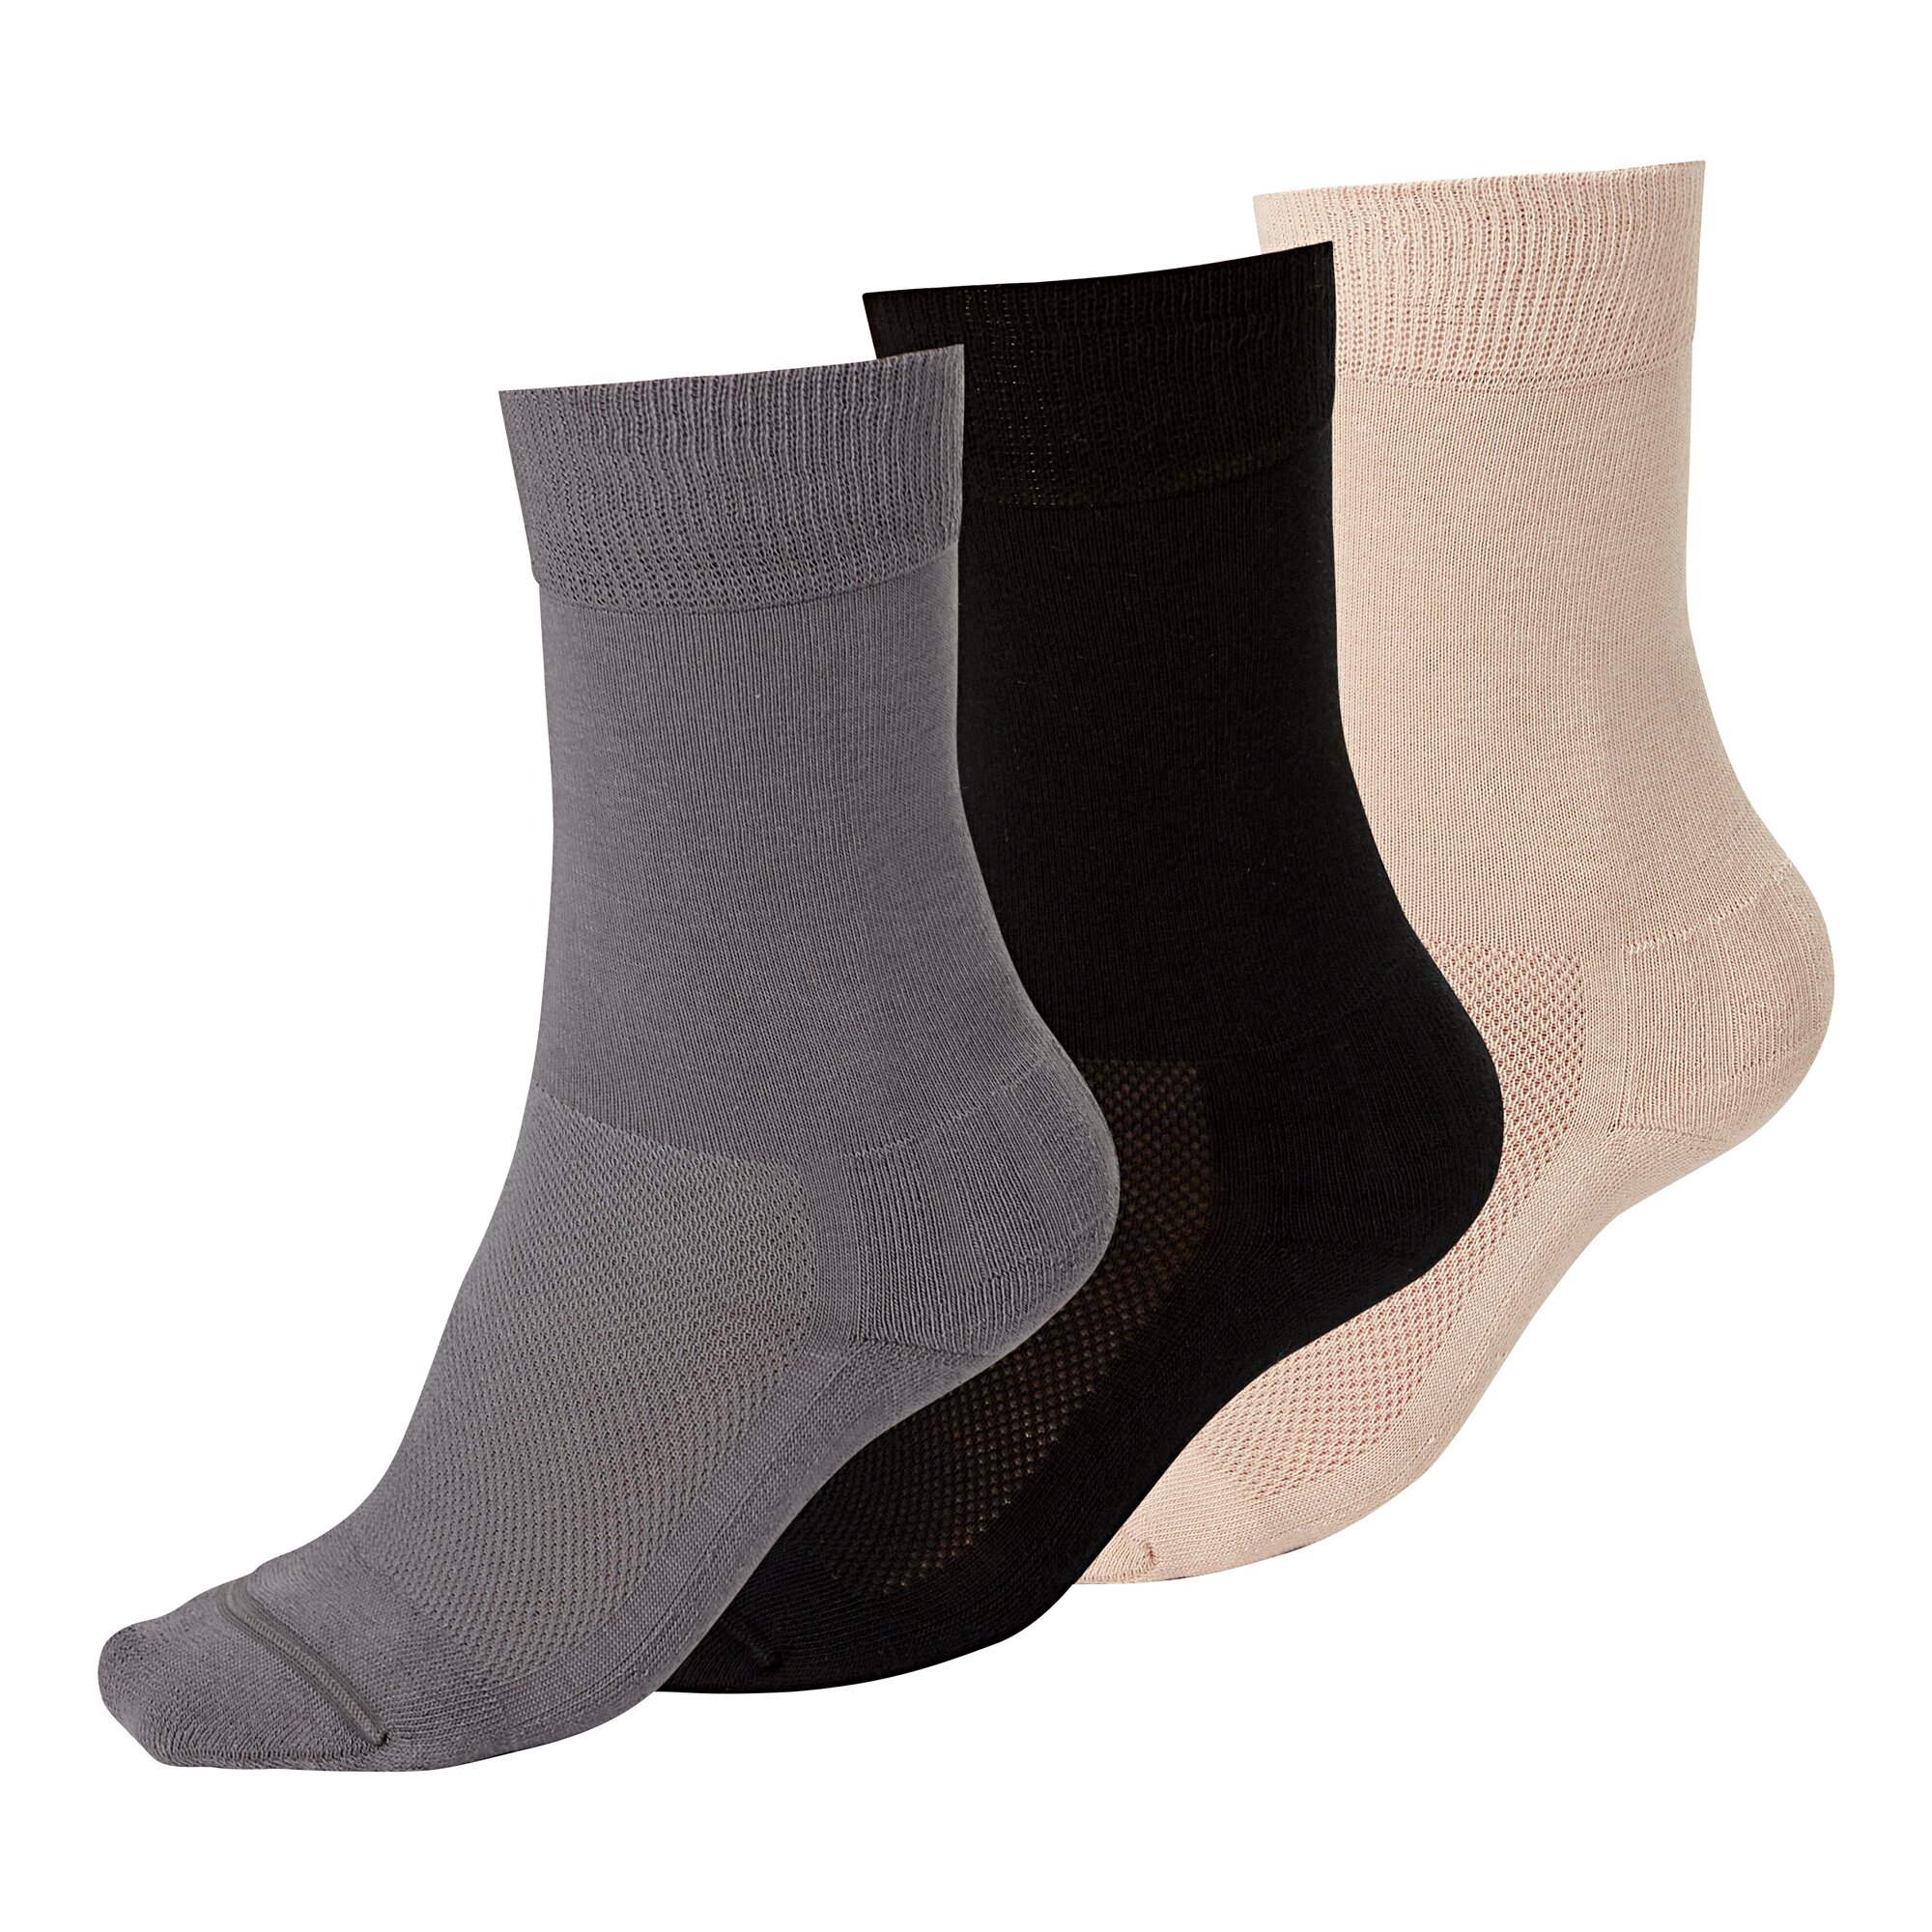 Venenfreund Socken, 2 Paar, Größe: 1, schwarz